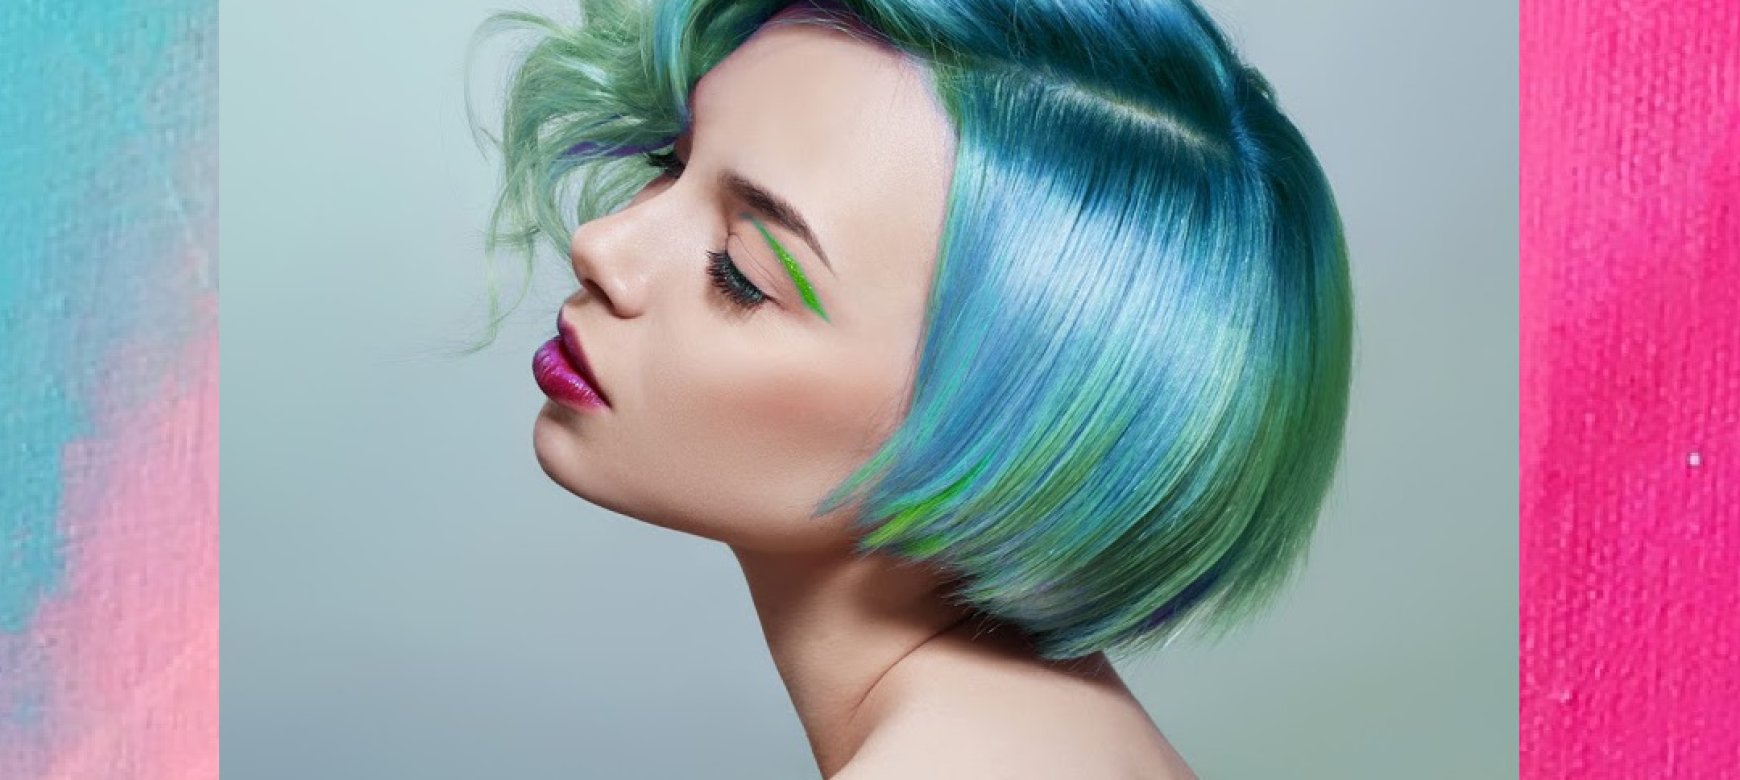 Νέες τάσεις χρωμάτων μαλλιών 2021 blog post